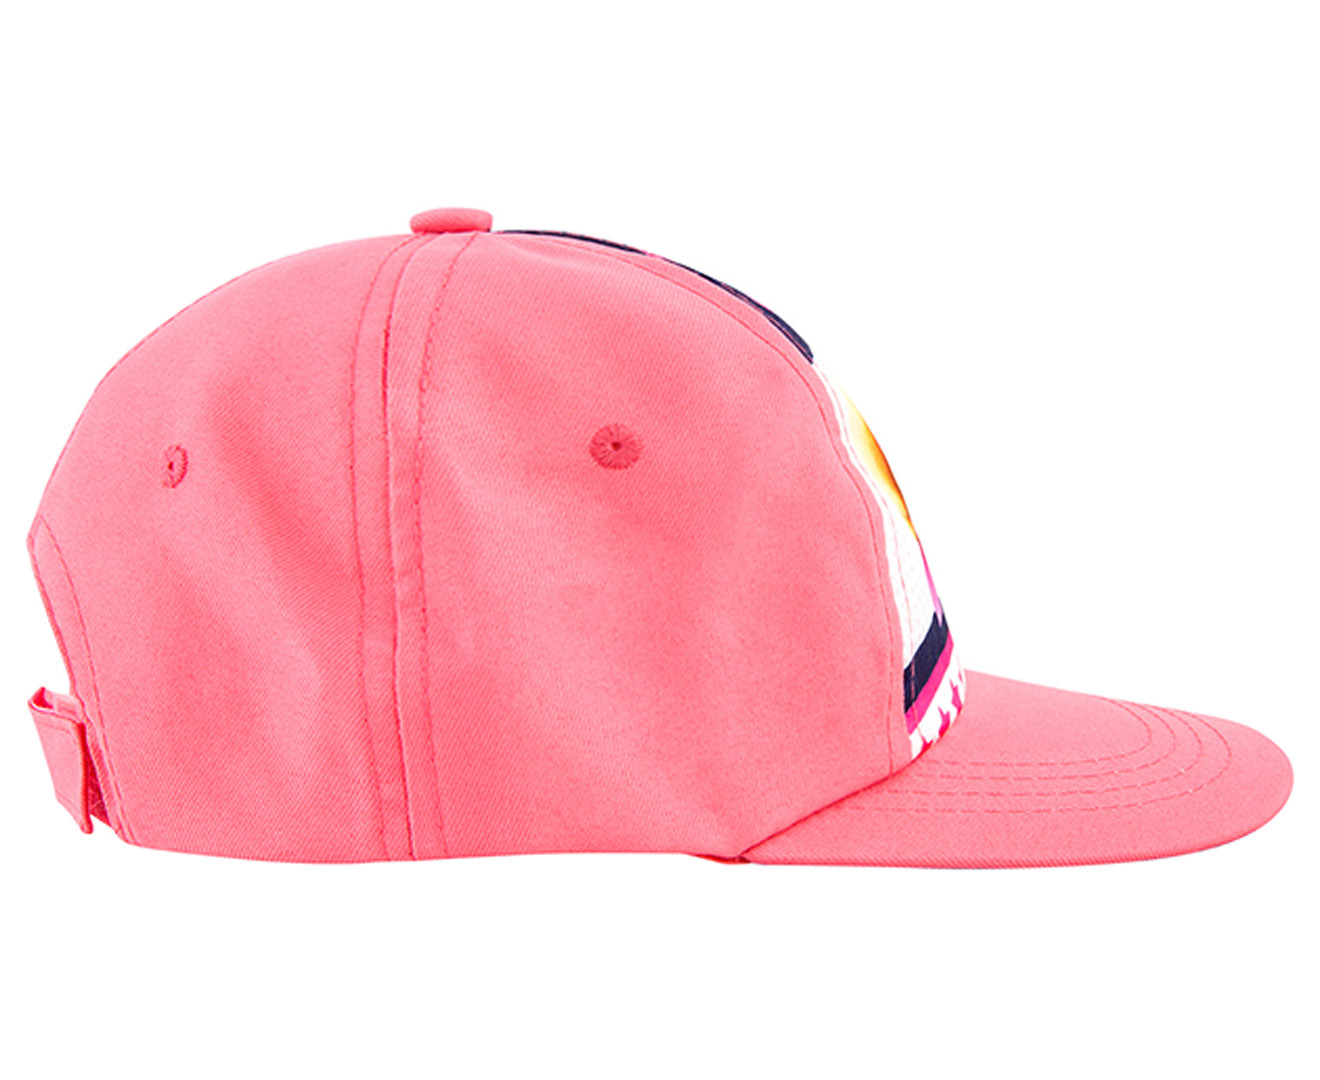 Paw Patrol Kids' Baseball Cap - Pink/Multi | Scoopon Shopping